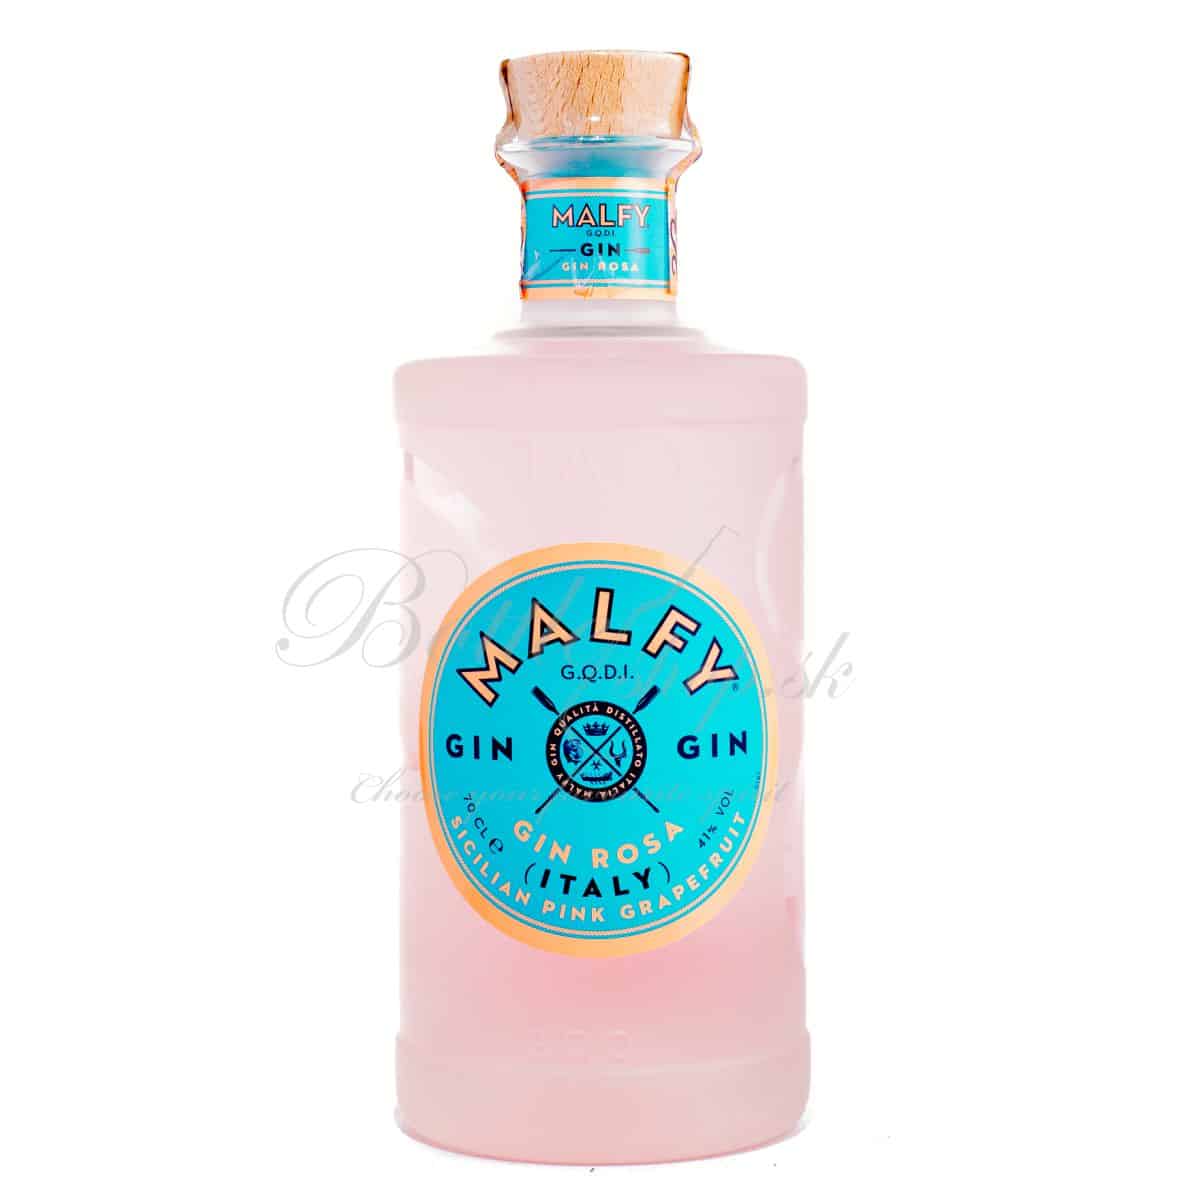 Malfy Gin Rosa 0,7l  Bottleshop je príjemný obchod aj eshop s